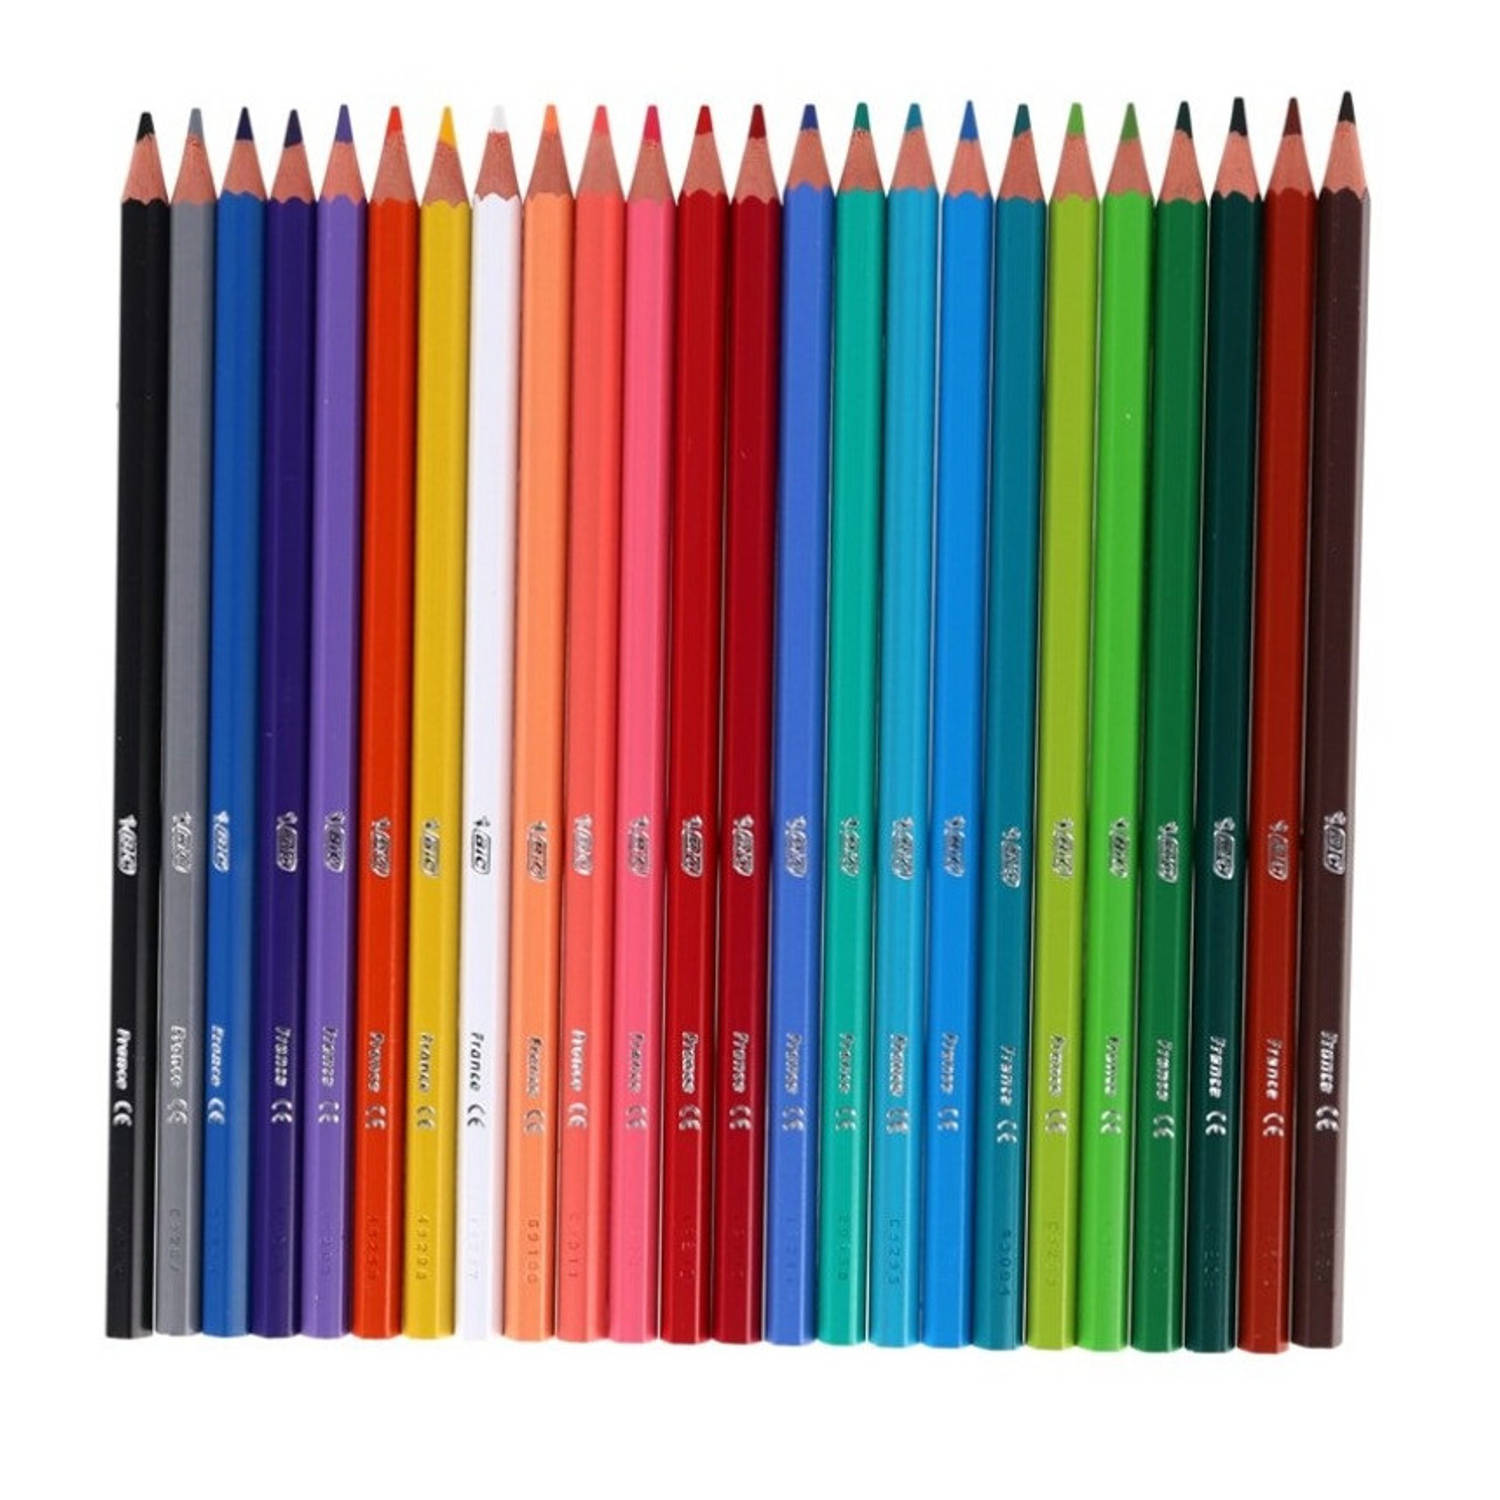 Bic kleurpotloden set van 24x stuks - Kleurpotlood